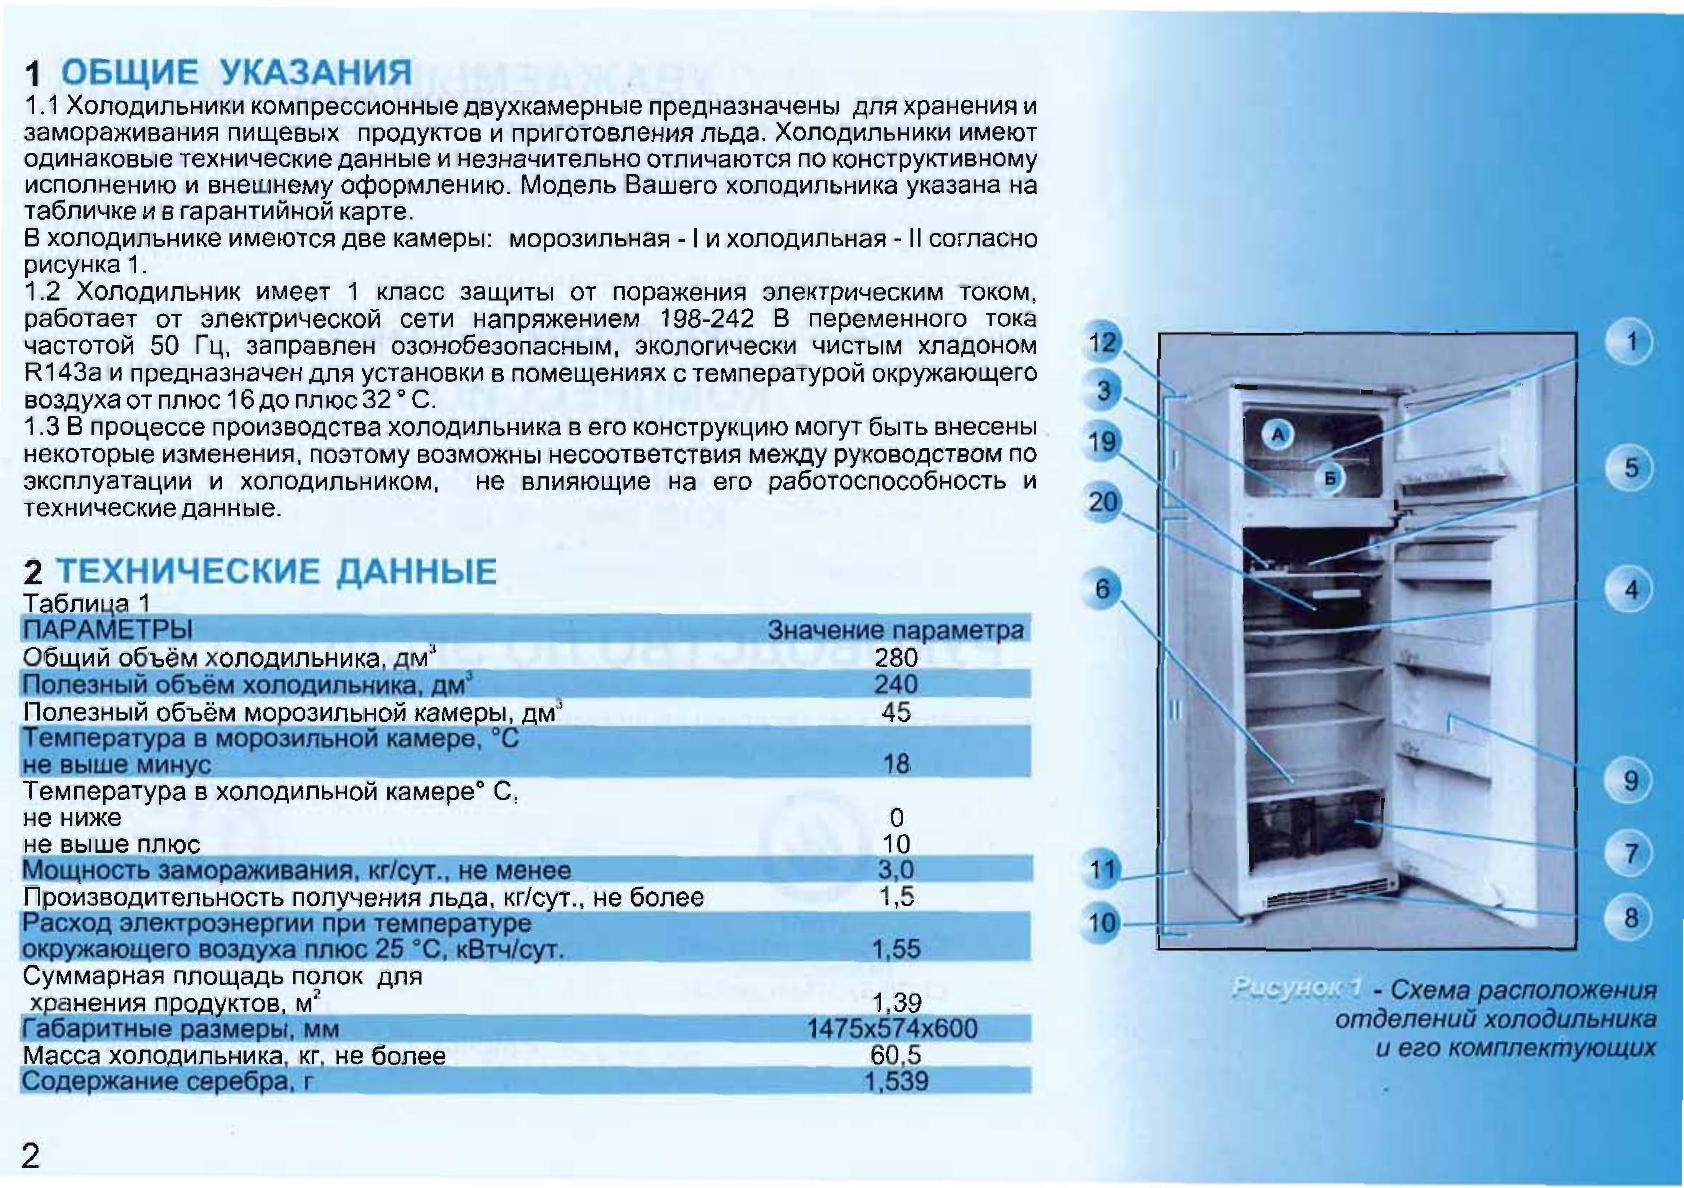 Плюсы и минусы инверторных компрессоров в холодильнике